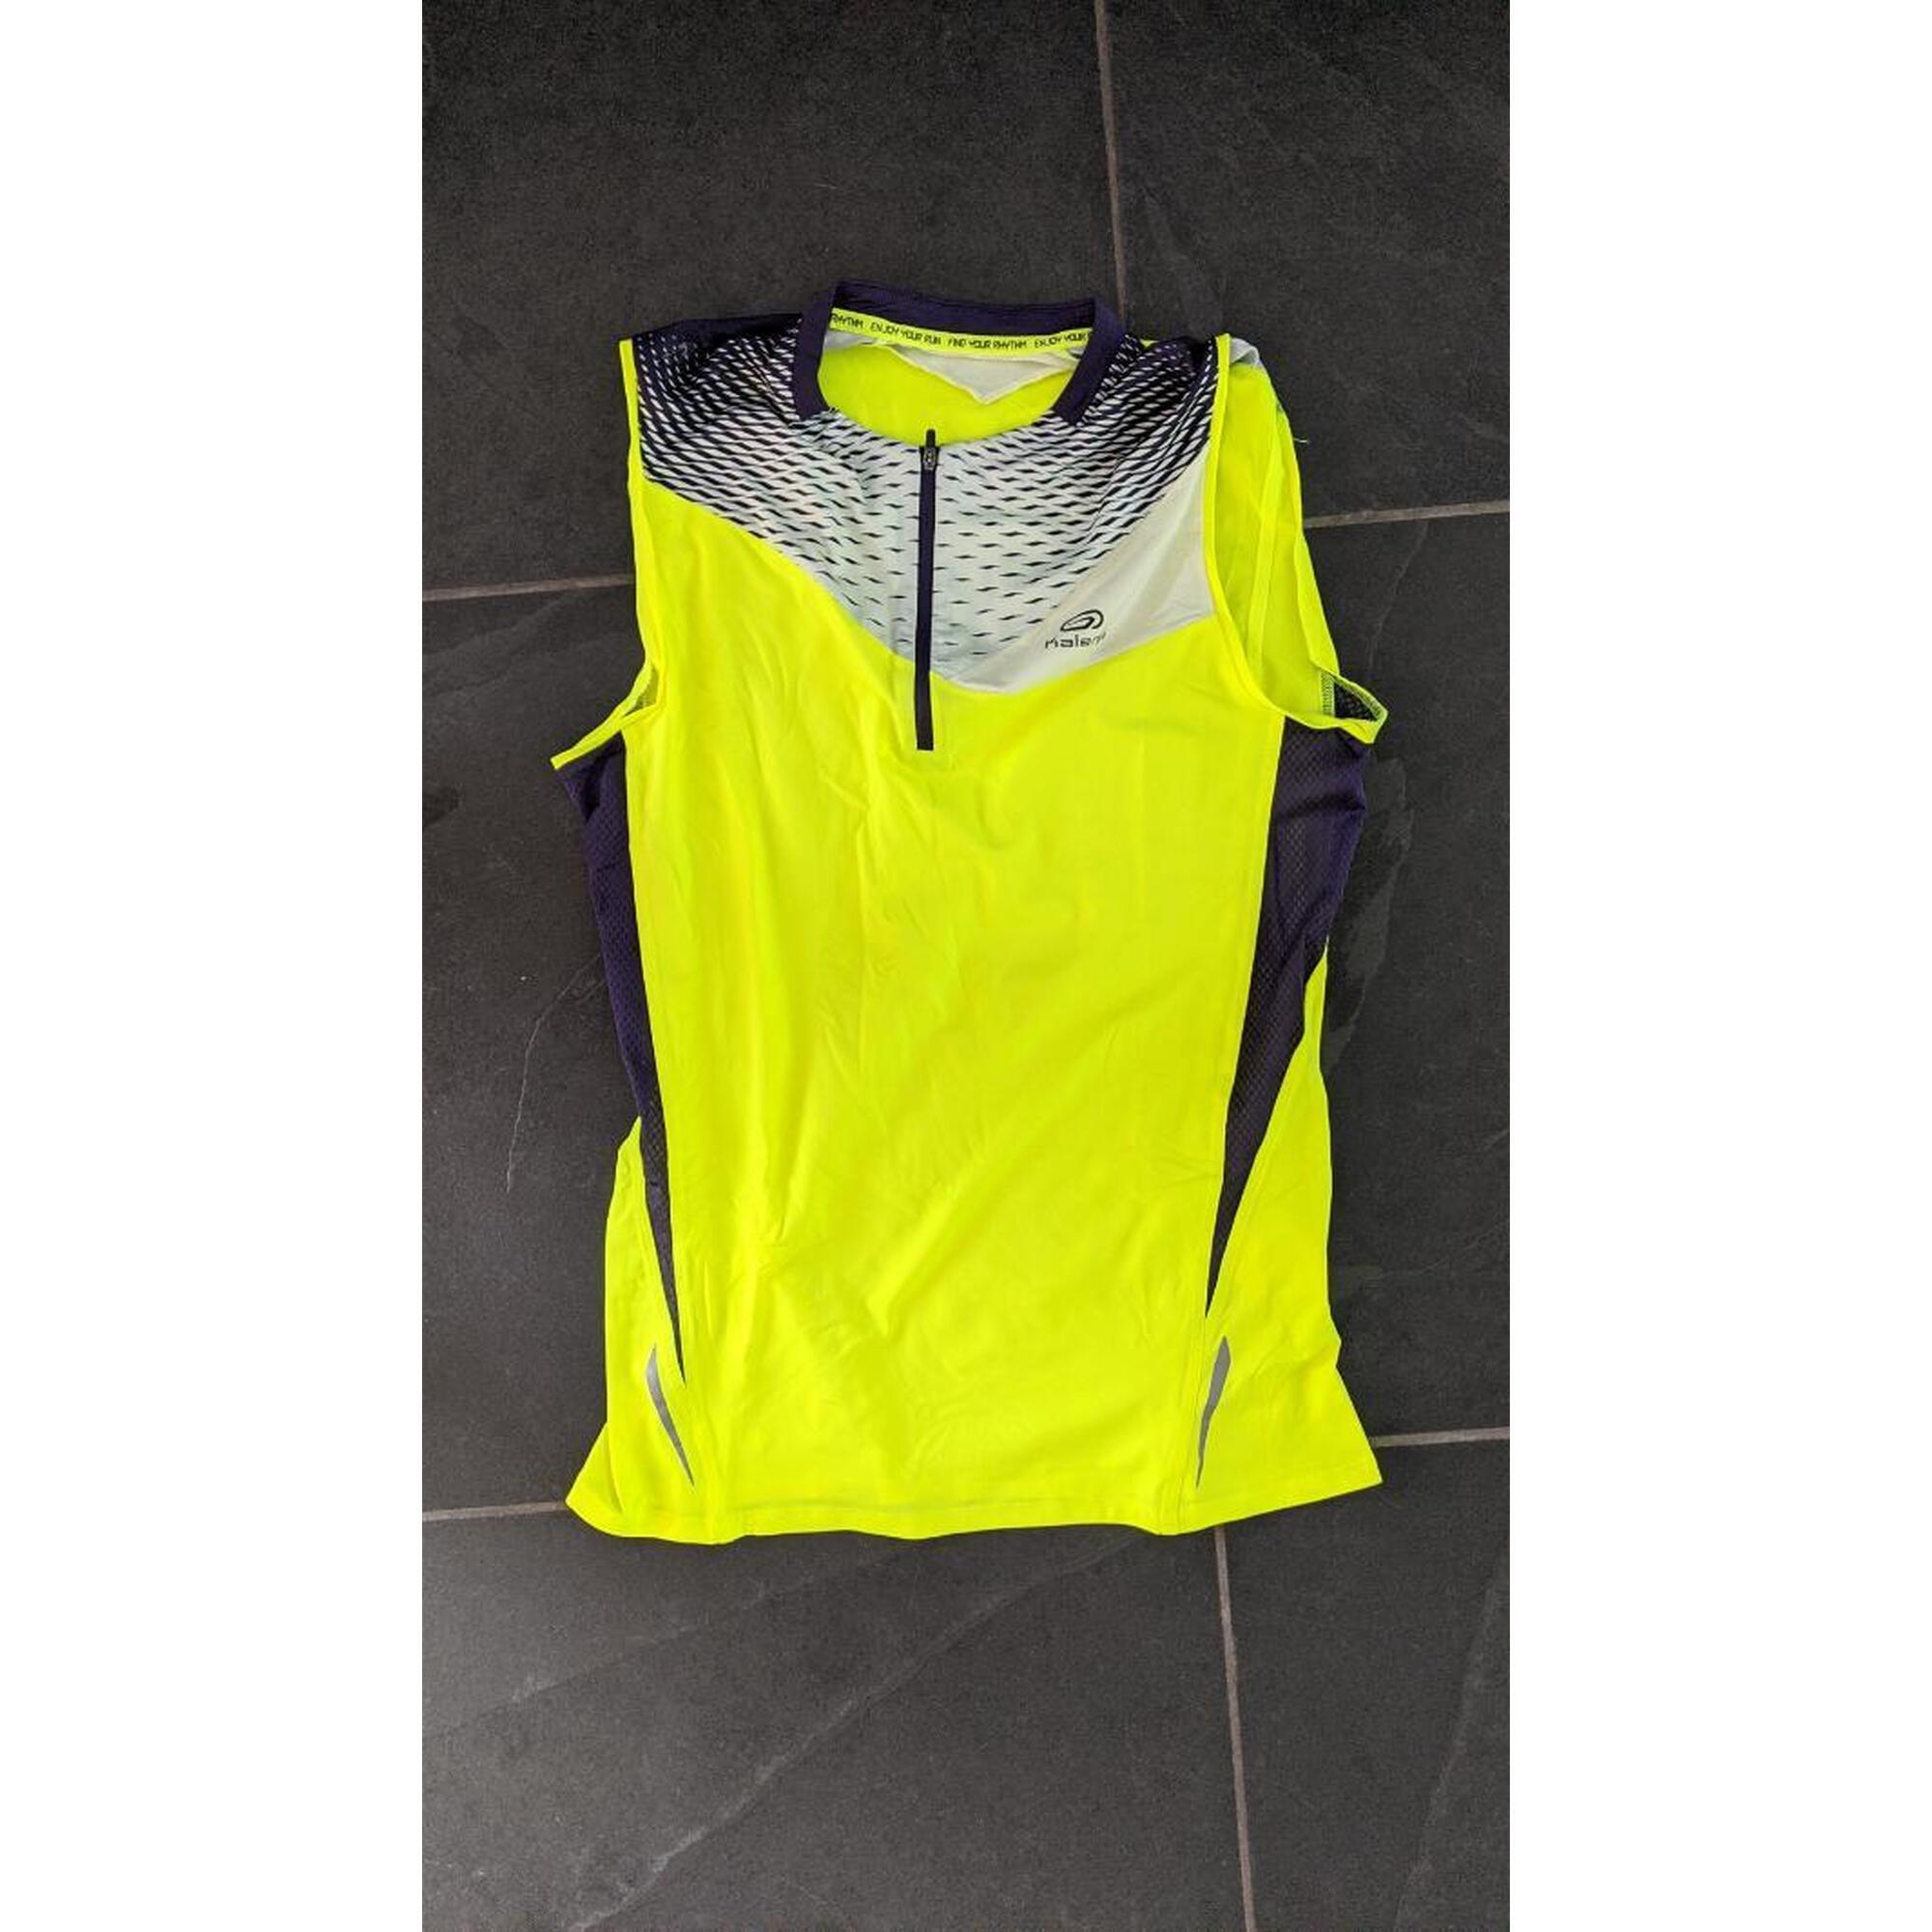 C2C - T-shirt de course à pied Kalenji Trail sans manches jaune